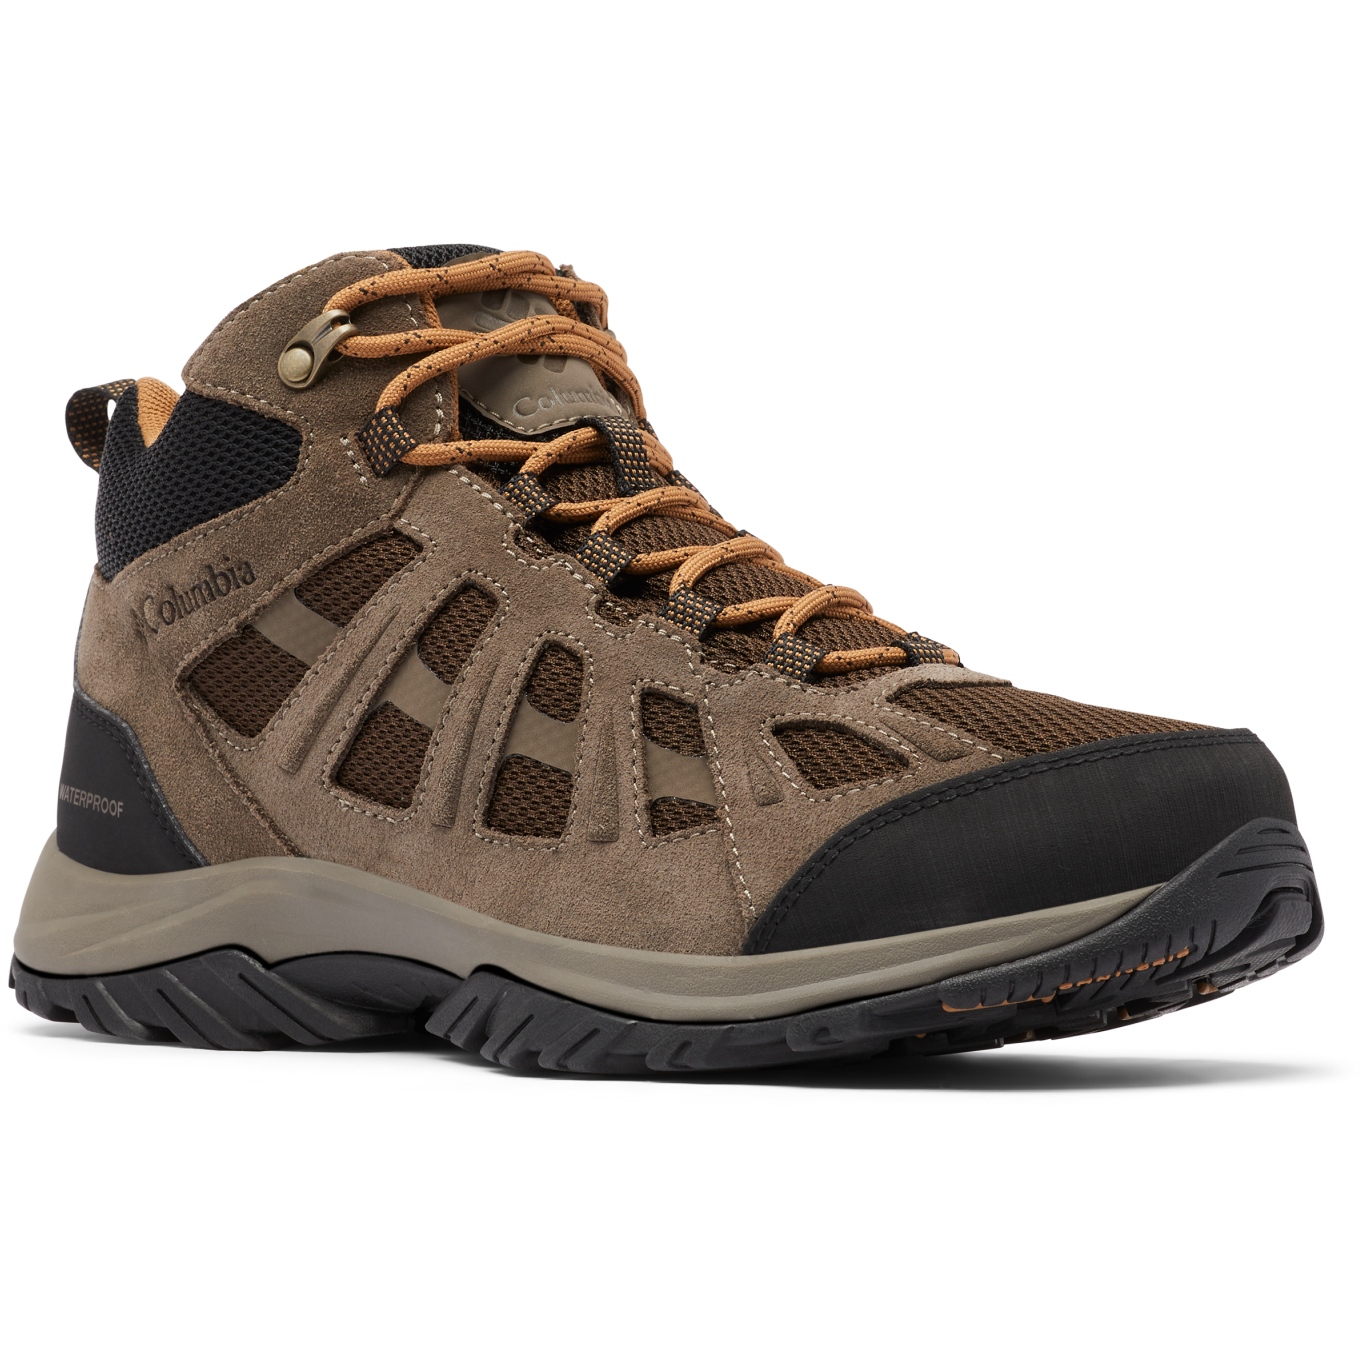 Picture of Columbia Redmond III Mid Waterproof Hiking Shoes - Cordovan, Elk